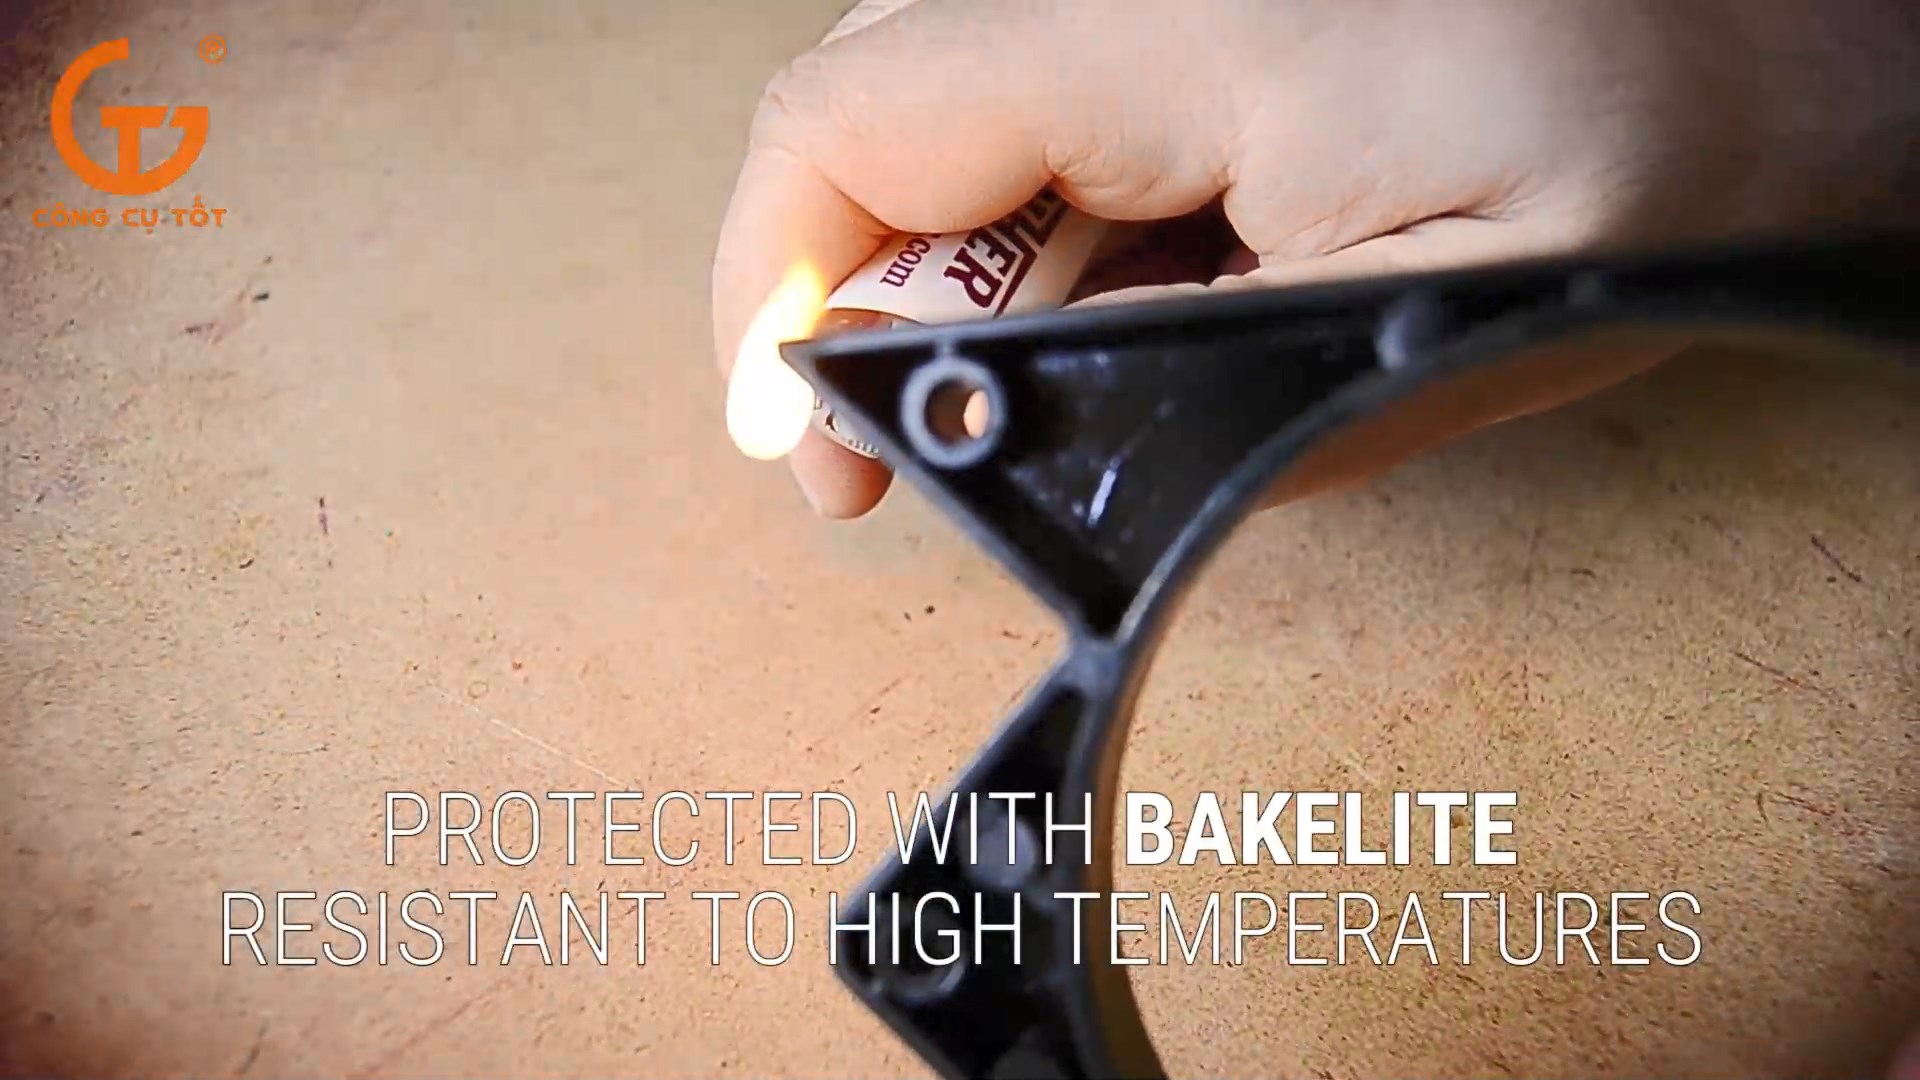 Phần nhựa bakelite bảo vệ có khả năng chịu nhiệt tốt, ngay cả khi đốt trực tiếp cũng không bị chảy 